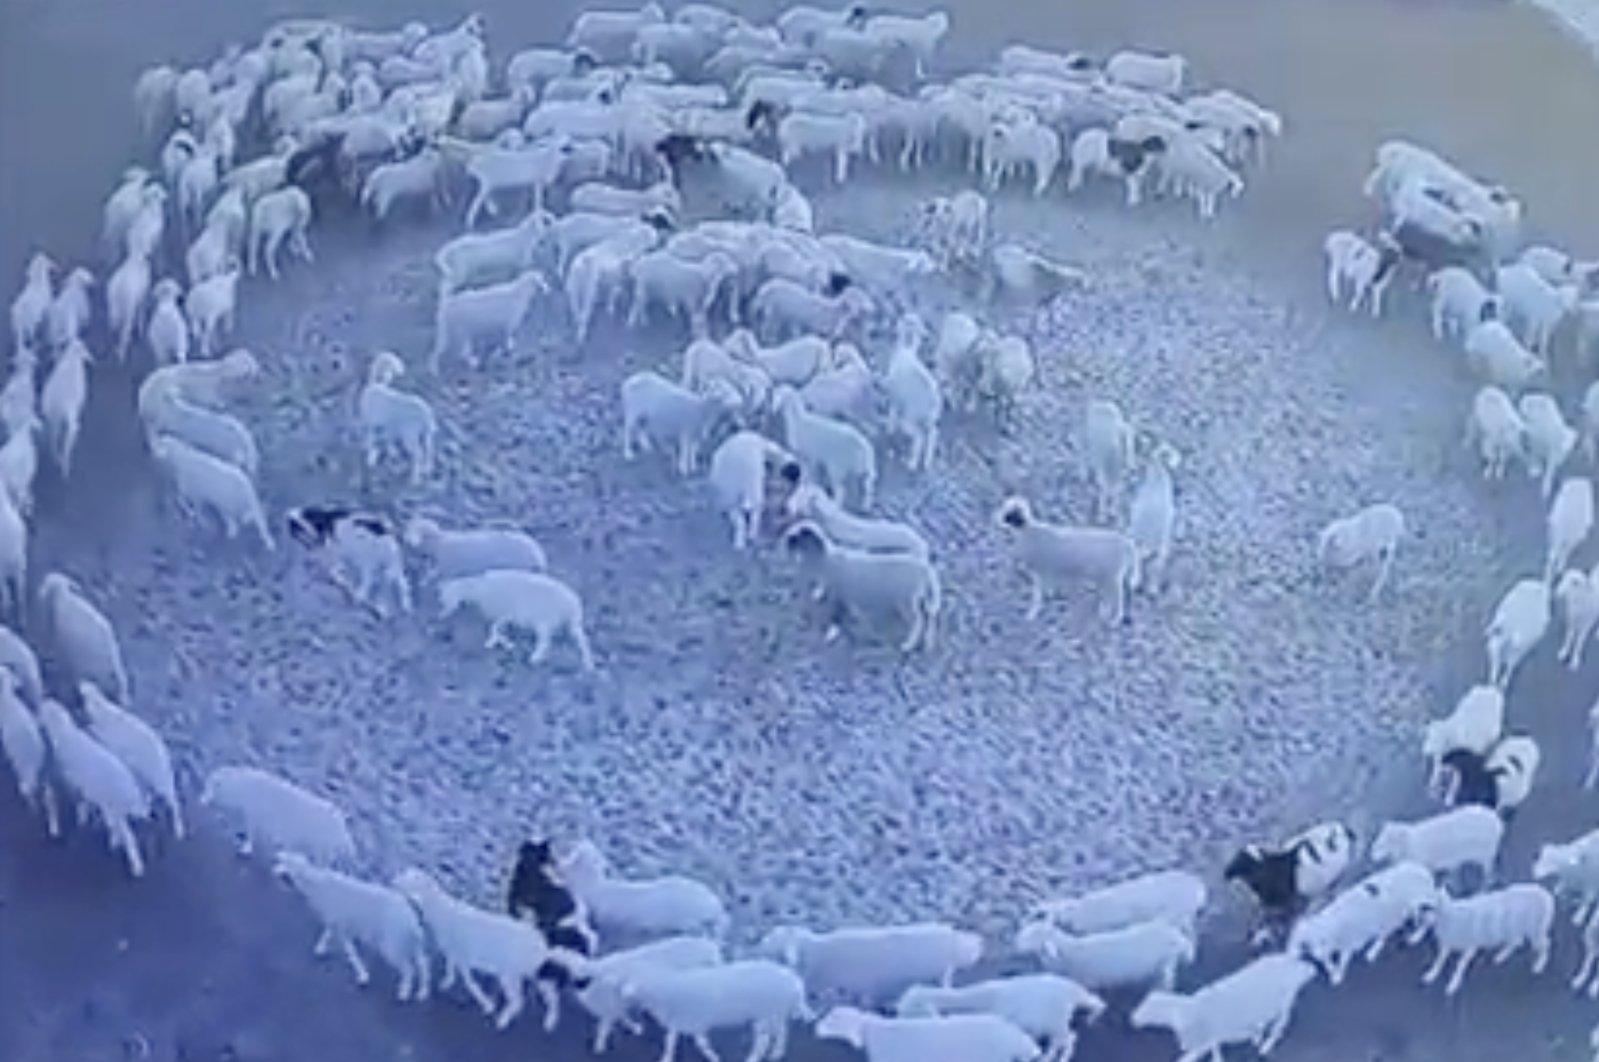 Ikuti kawanannya: Kawanan domba mengitari lumbung selama 12 hari berturut-turut